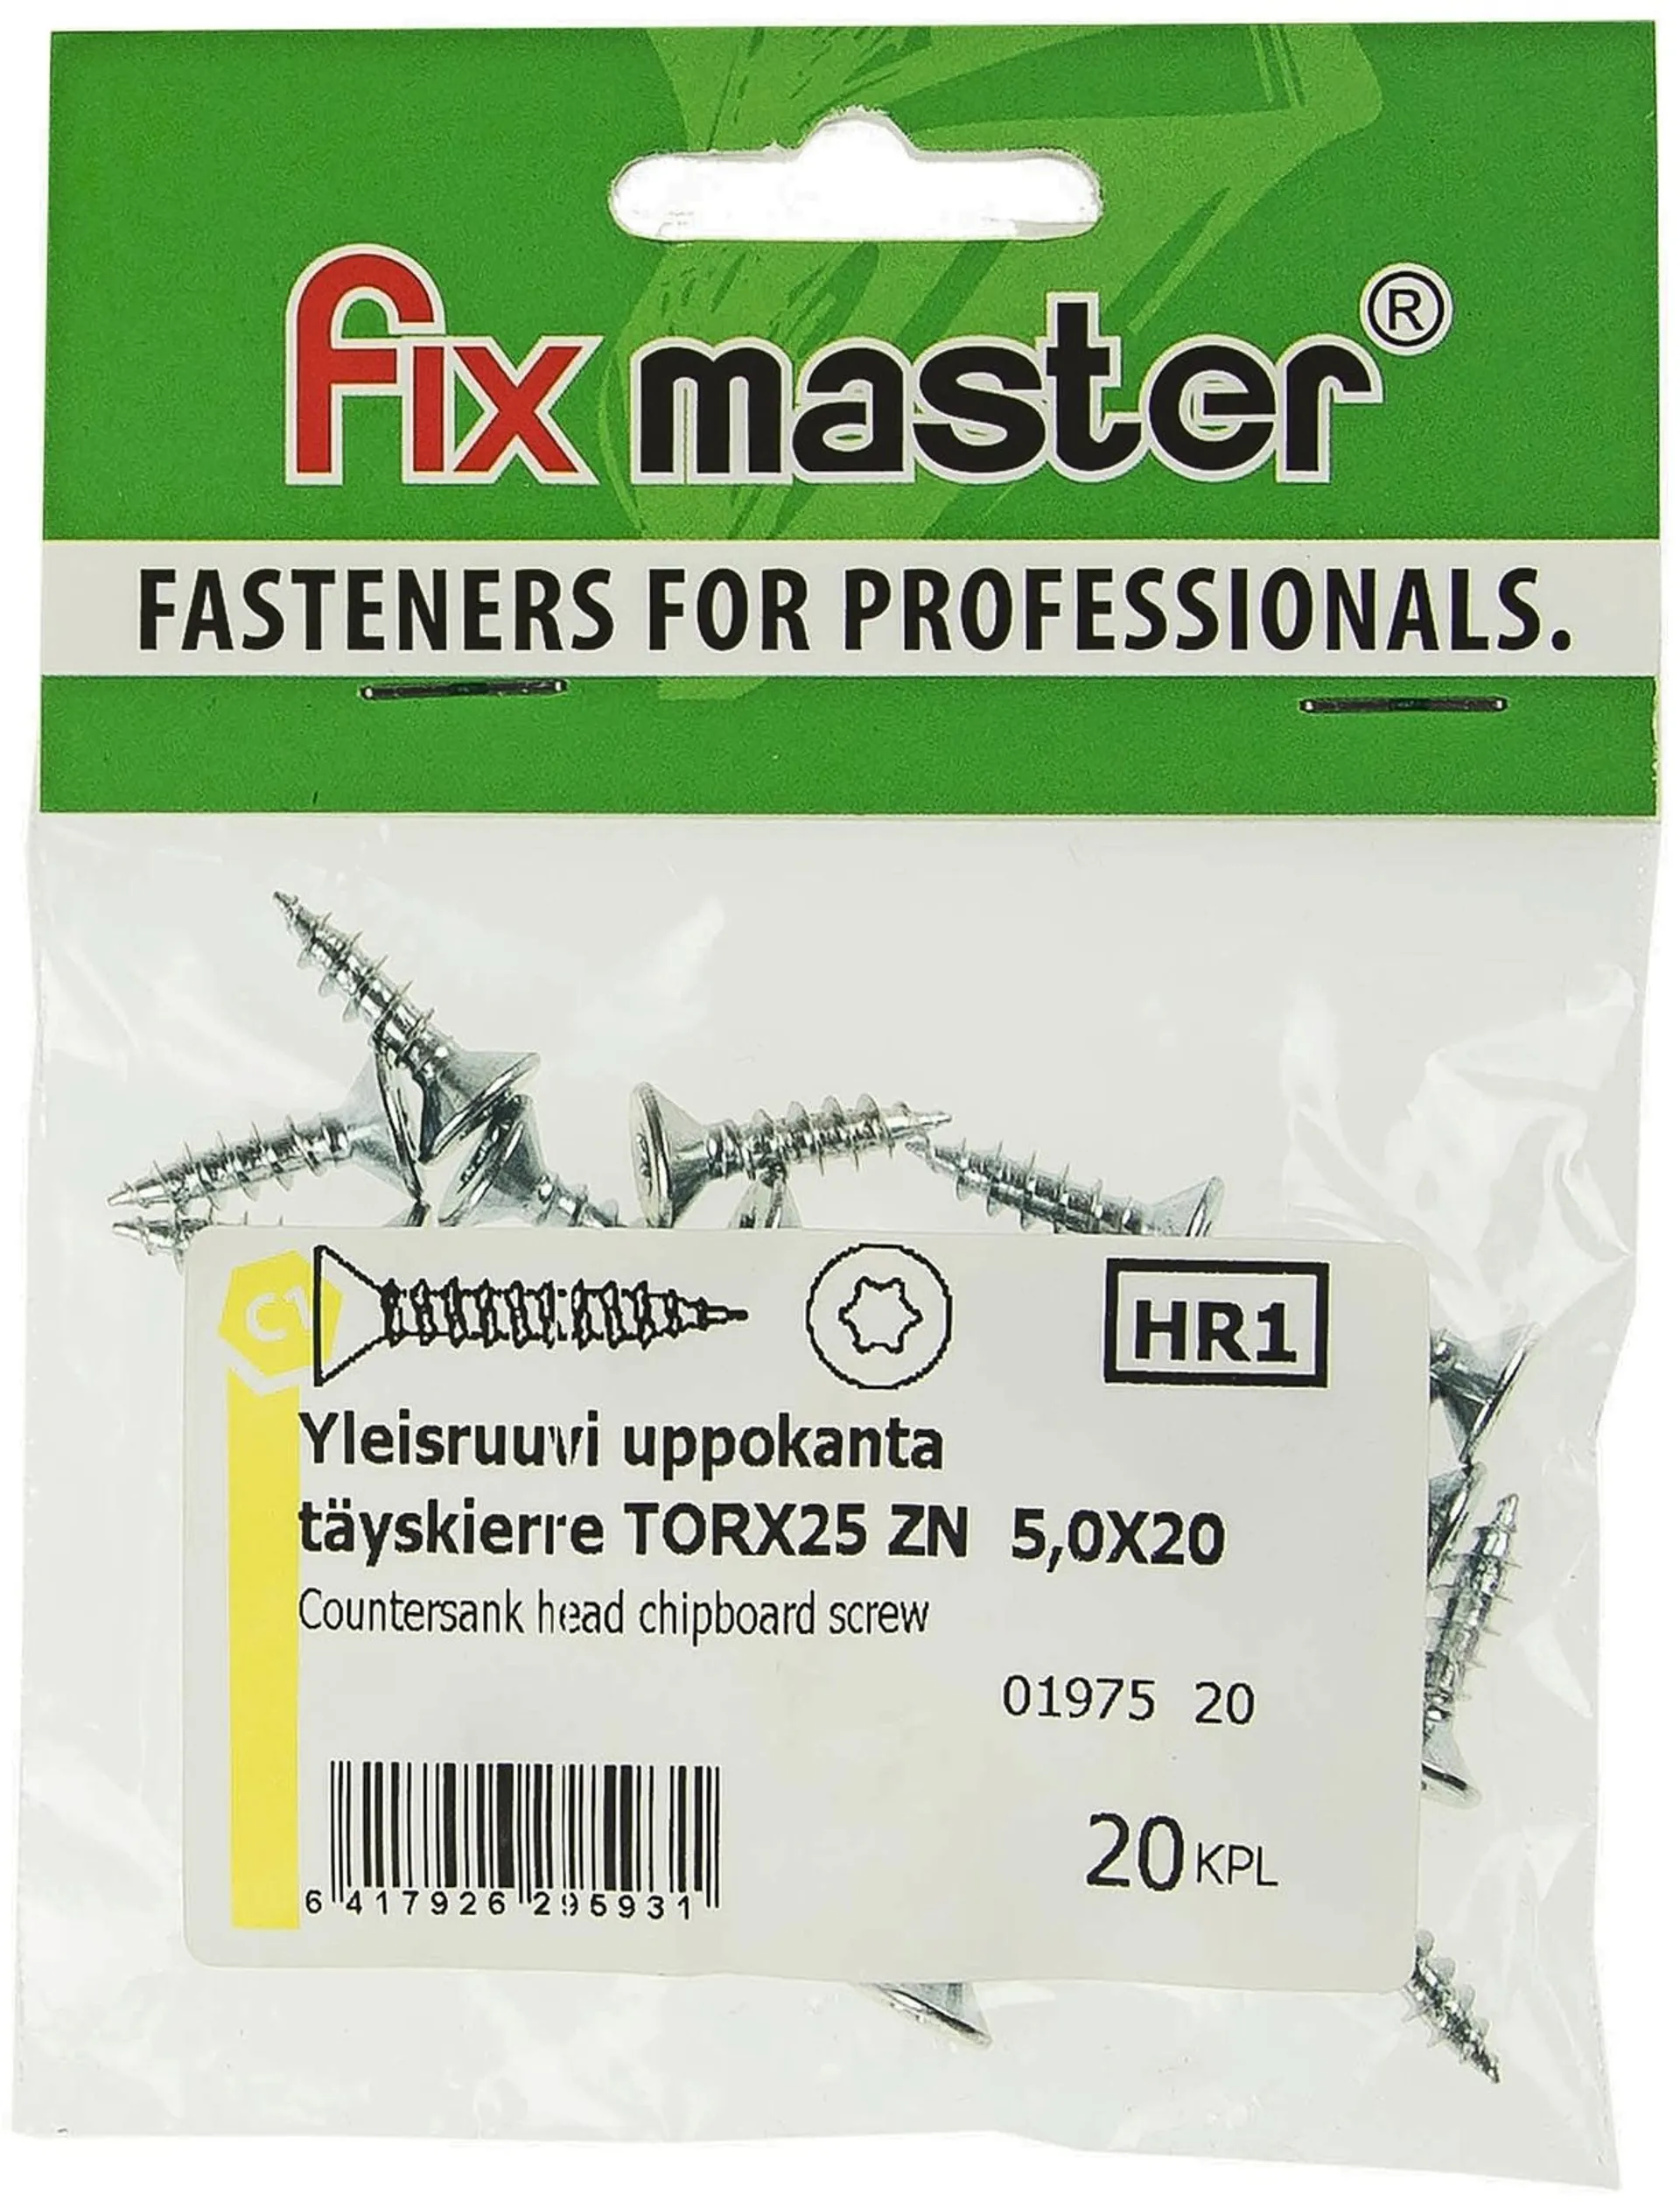 Fix Master yleisruuvi uppokanta 5X20 torx25 sinkitty 20kpl